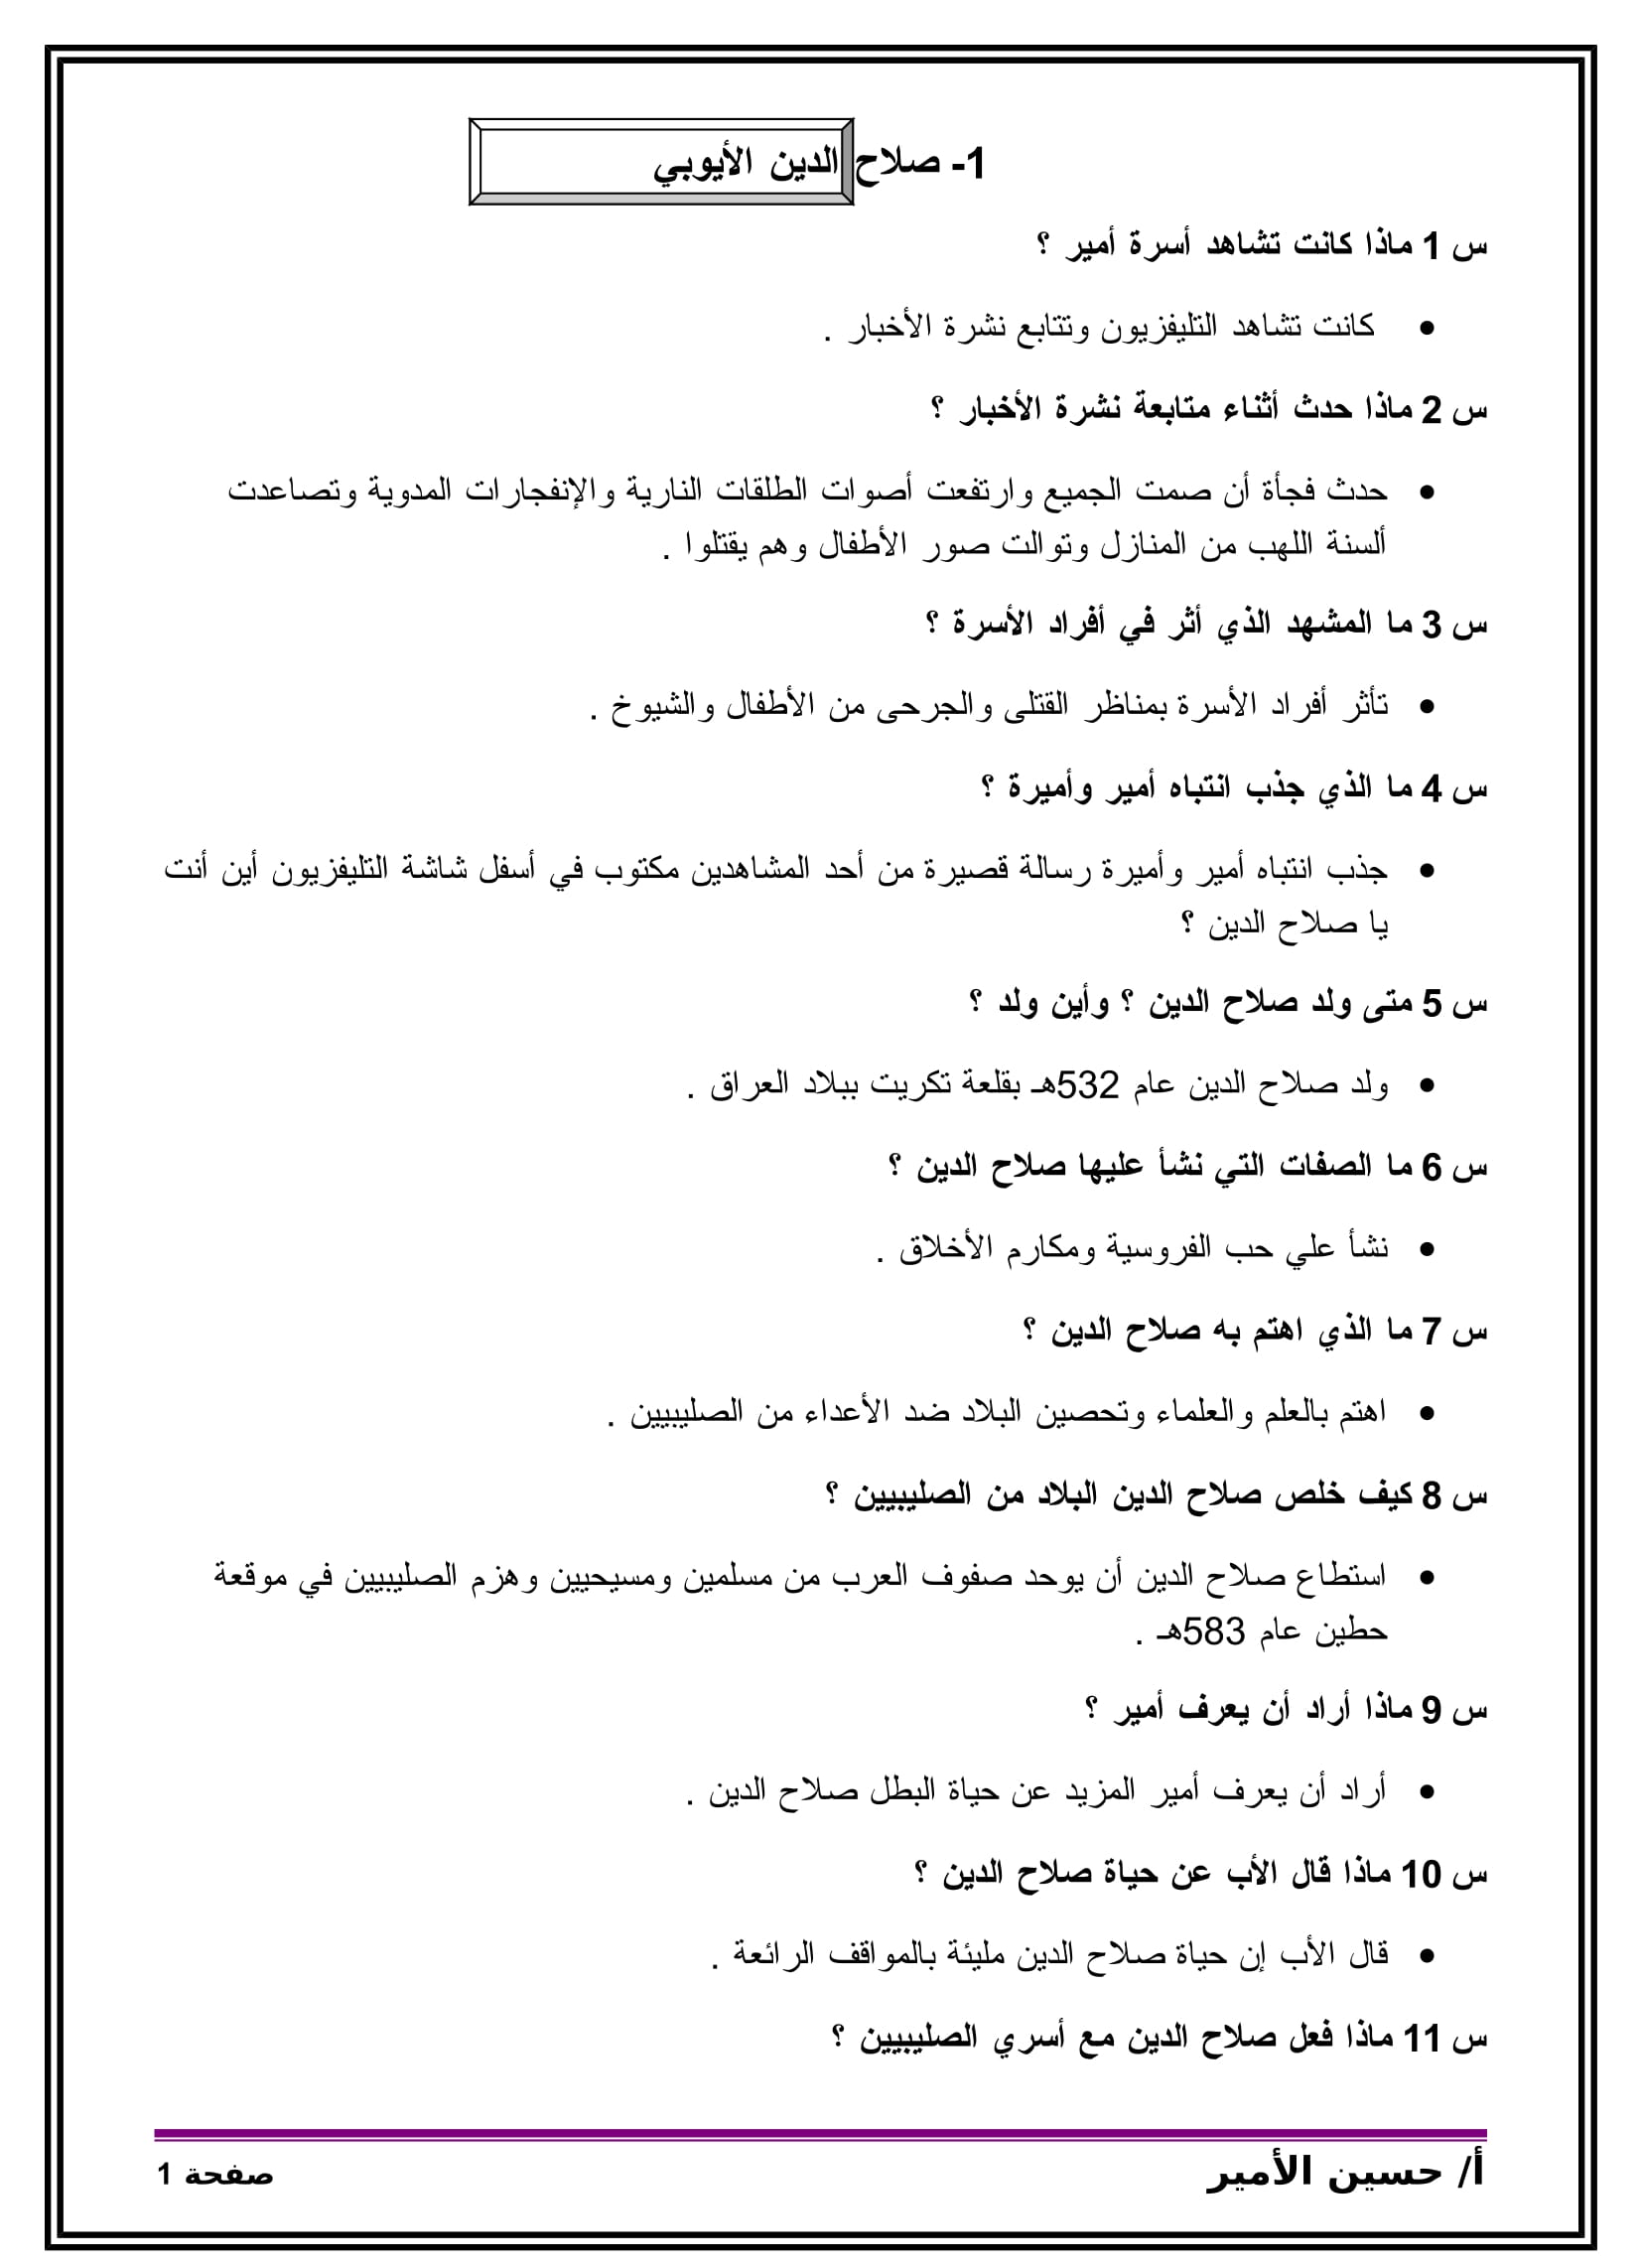 مذكرة فى اللغة العربية للصف الخامس الابتدائى الترم الثانى